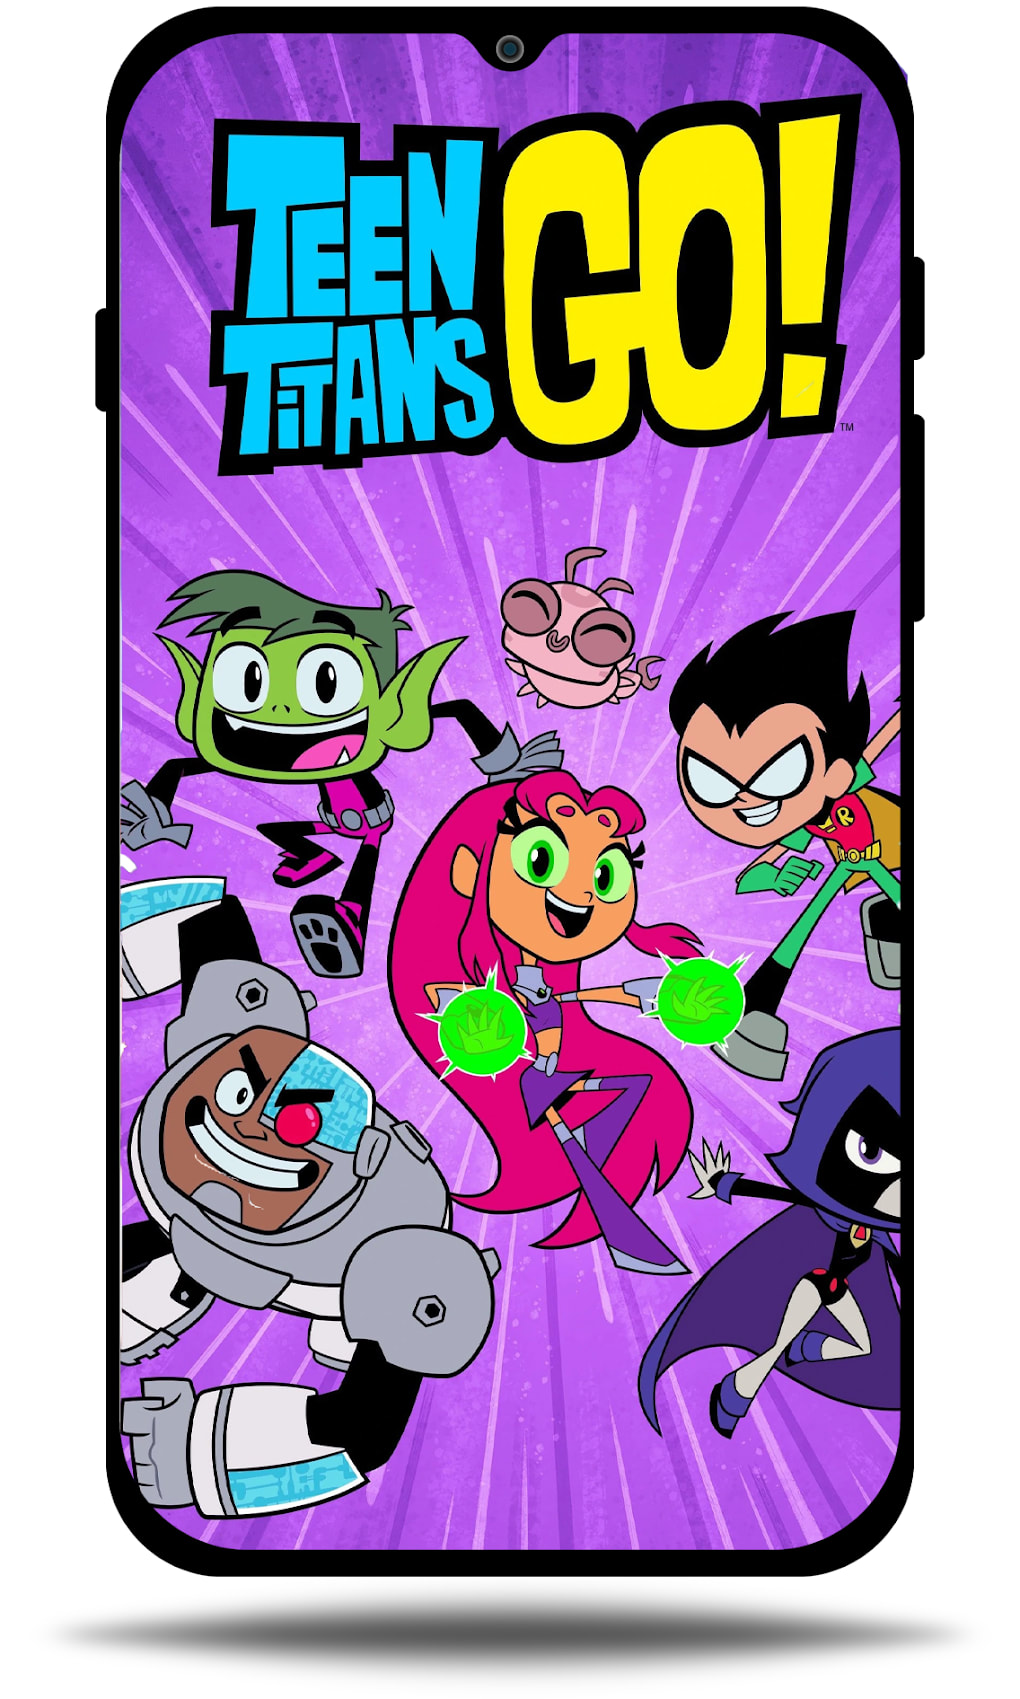 Teen Titans GO 4k Wallpaper per Android - Download